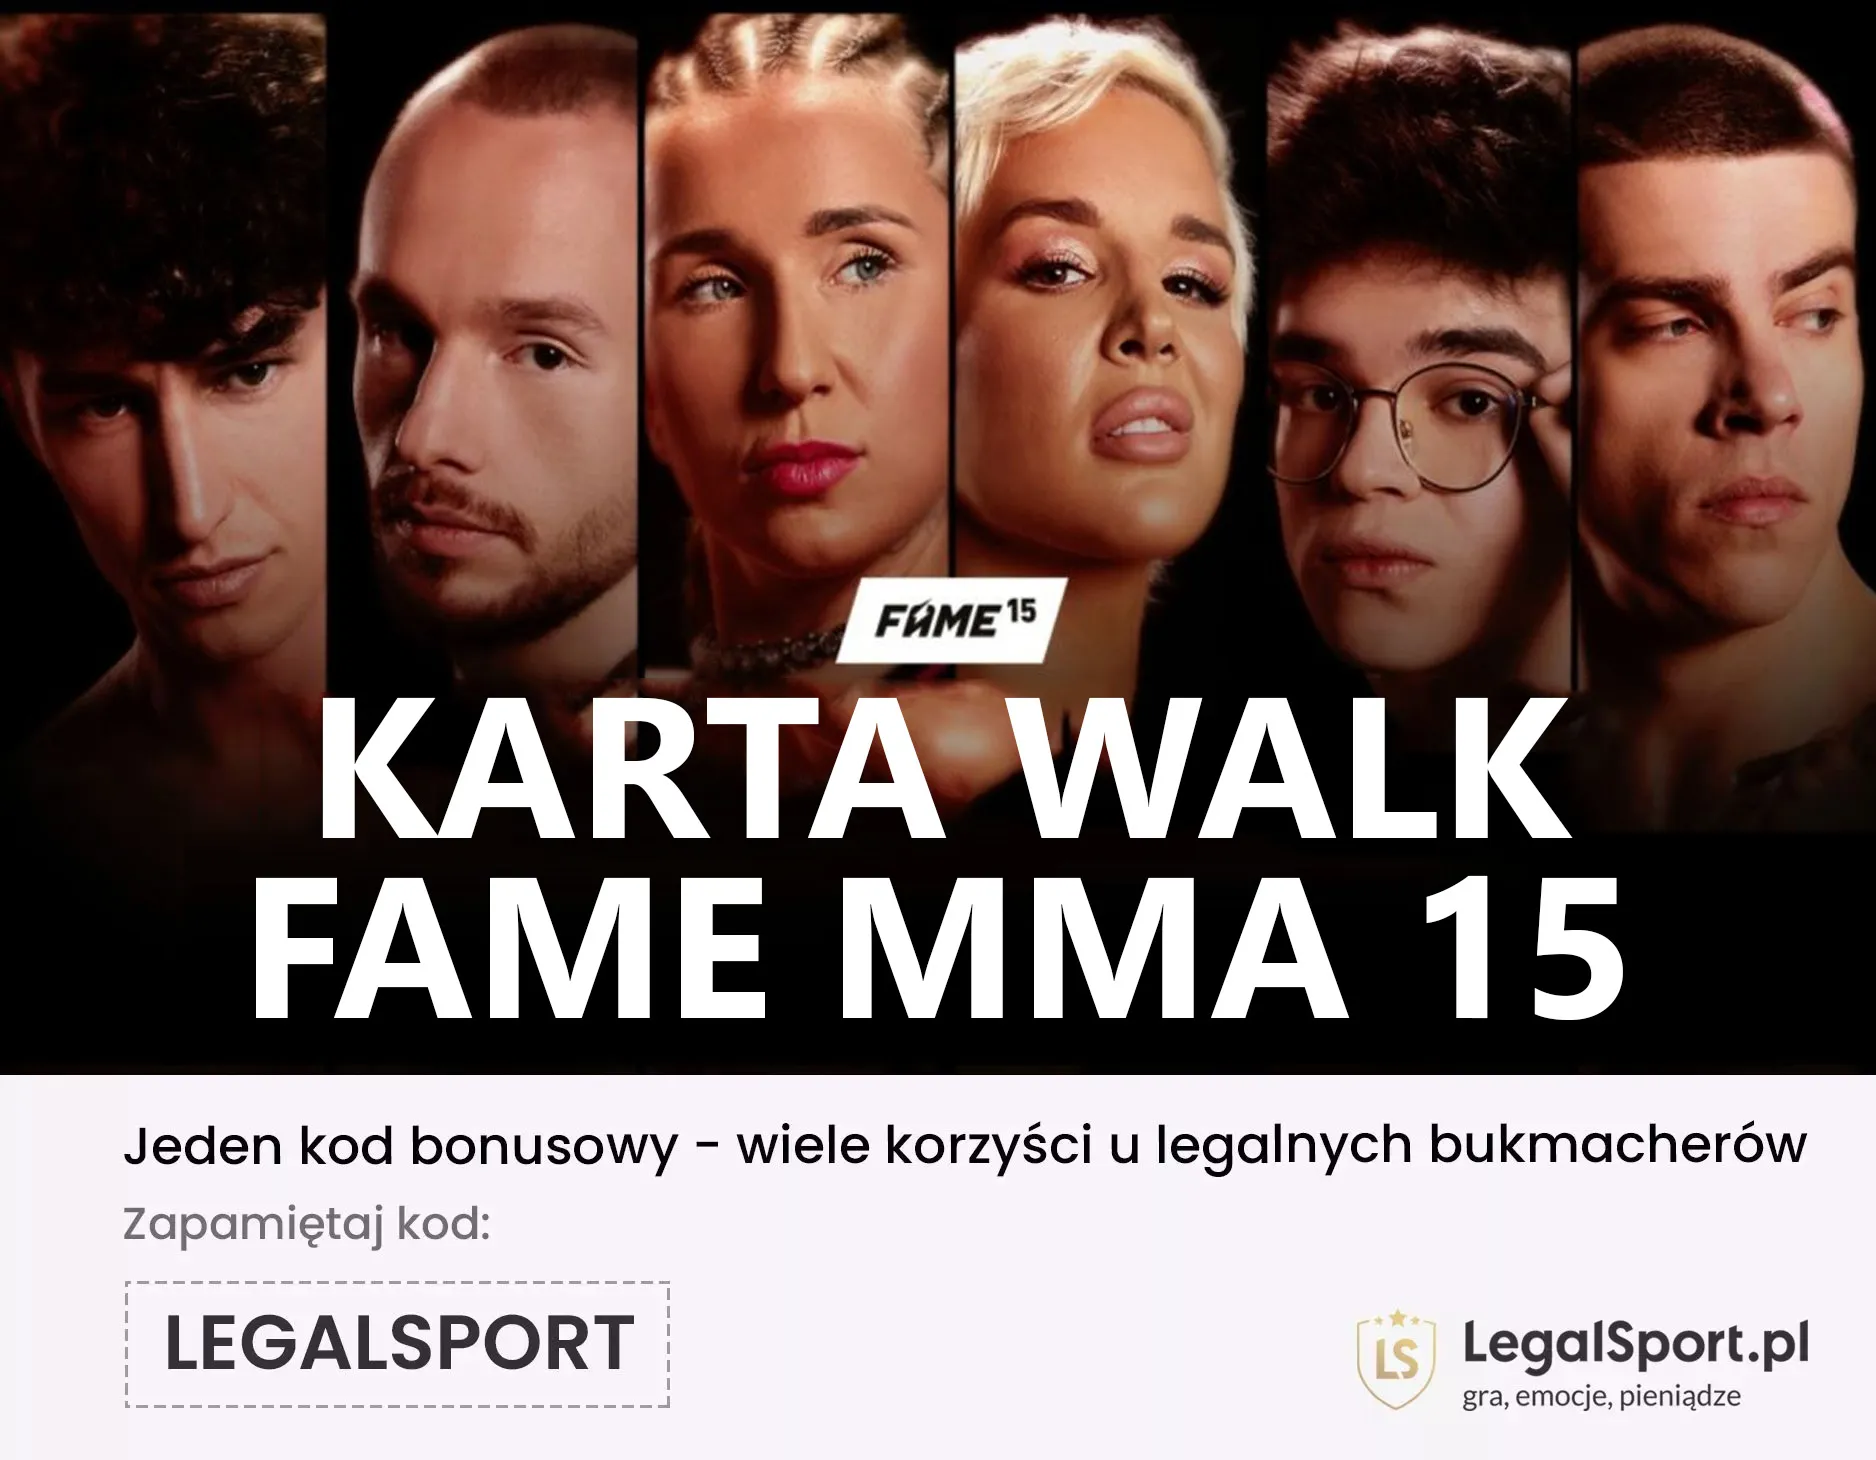 FAME MMA 15: karta walk